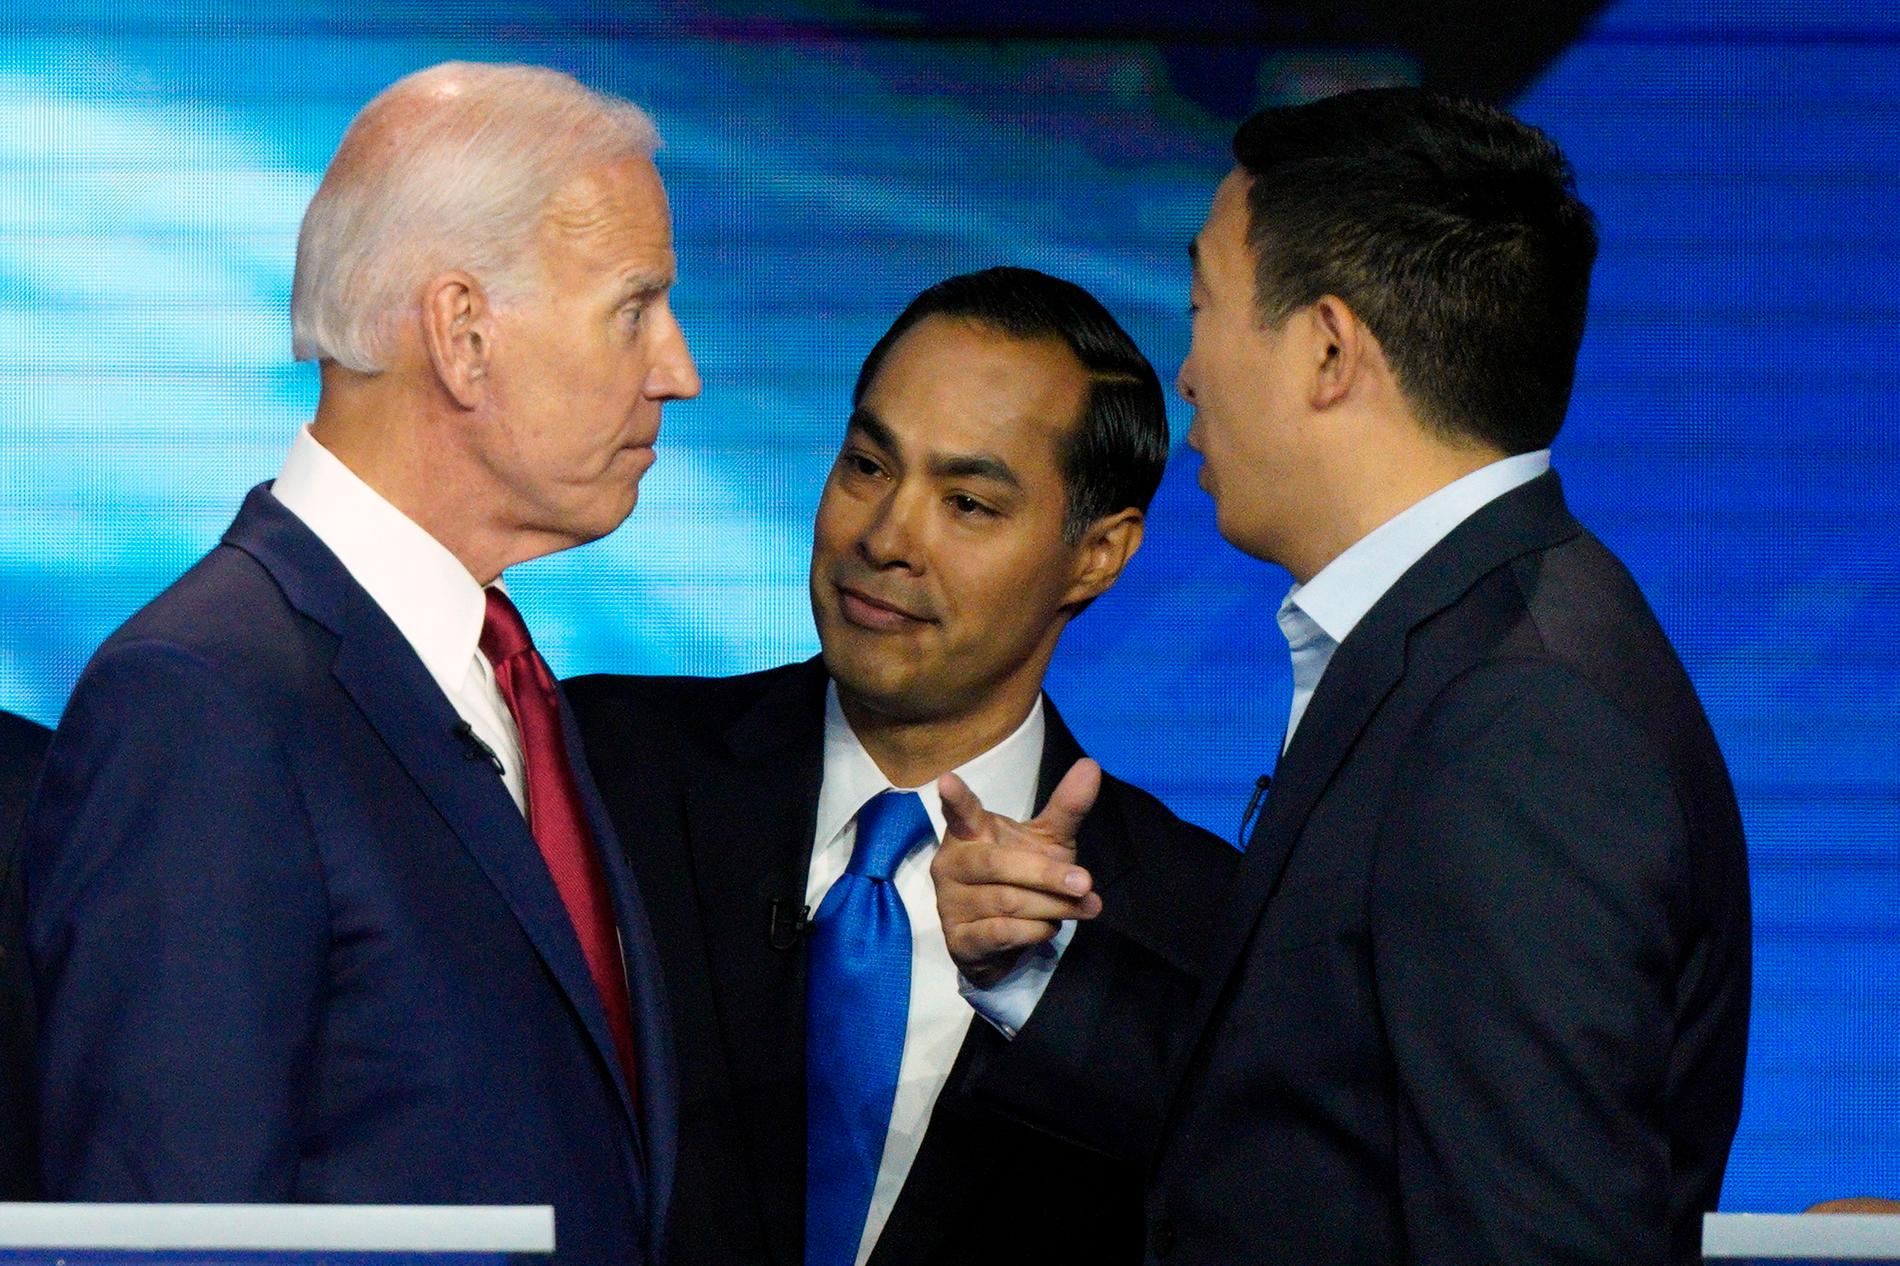 Julian Castro, före detta bostadsminister i Obamas regering, gick till hård attack mot Joe Biden. 